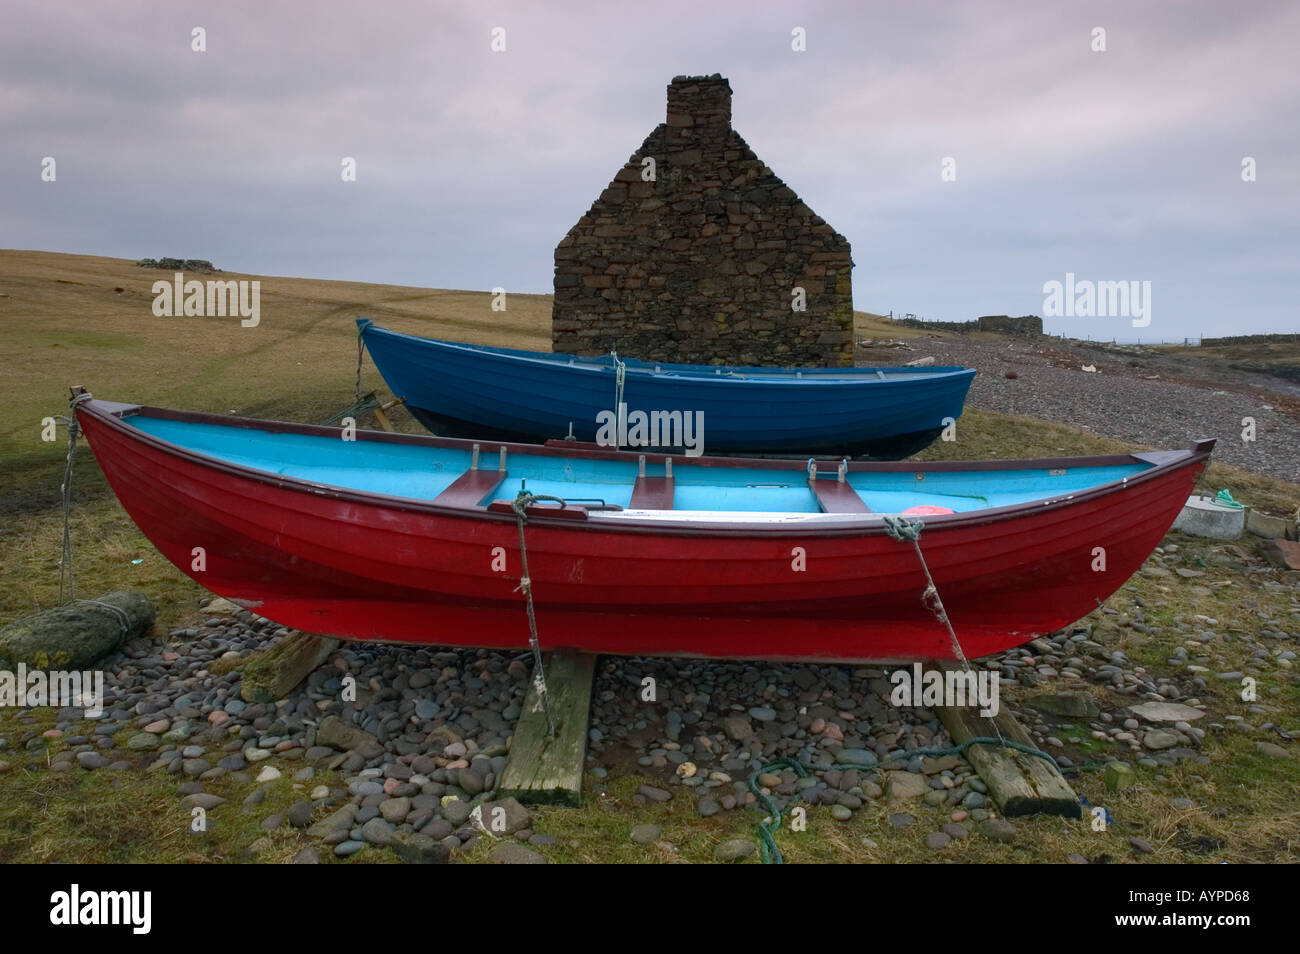 Îles Shetland, Écosse, Royaume-Uni Les bateaux traditionnels et Croft House, HIVER Banque D'Images